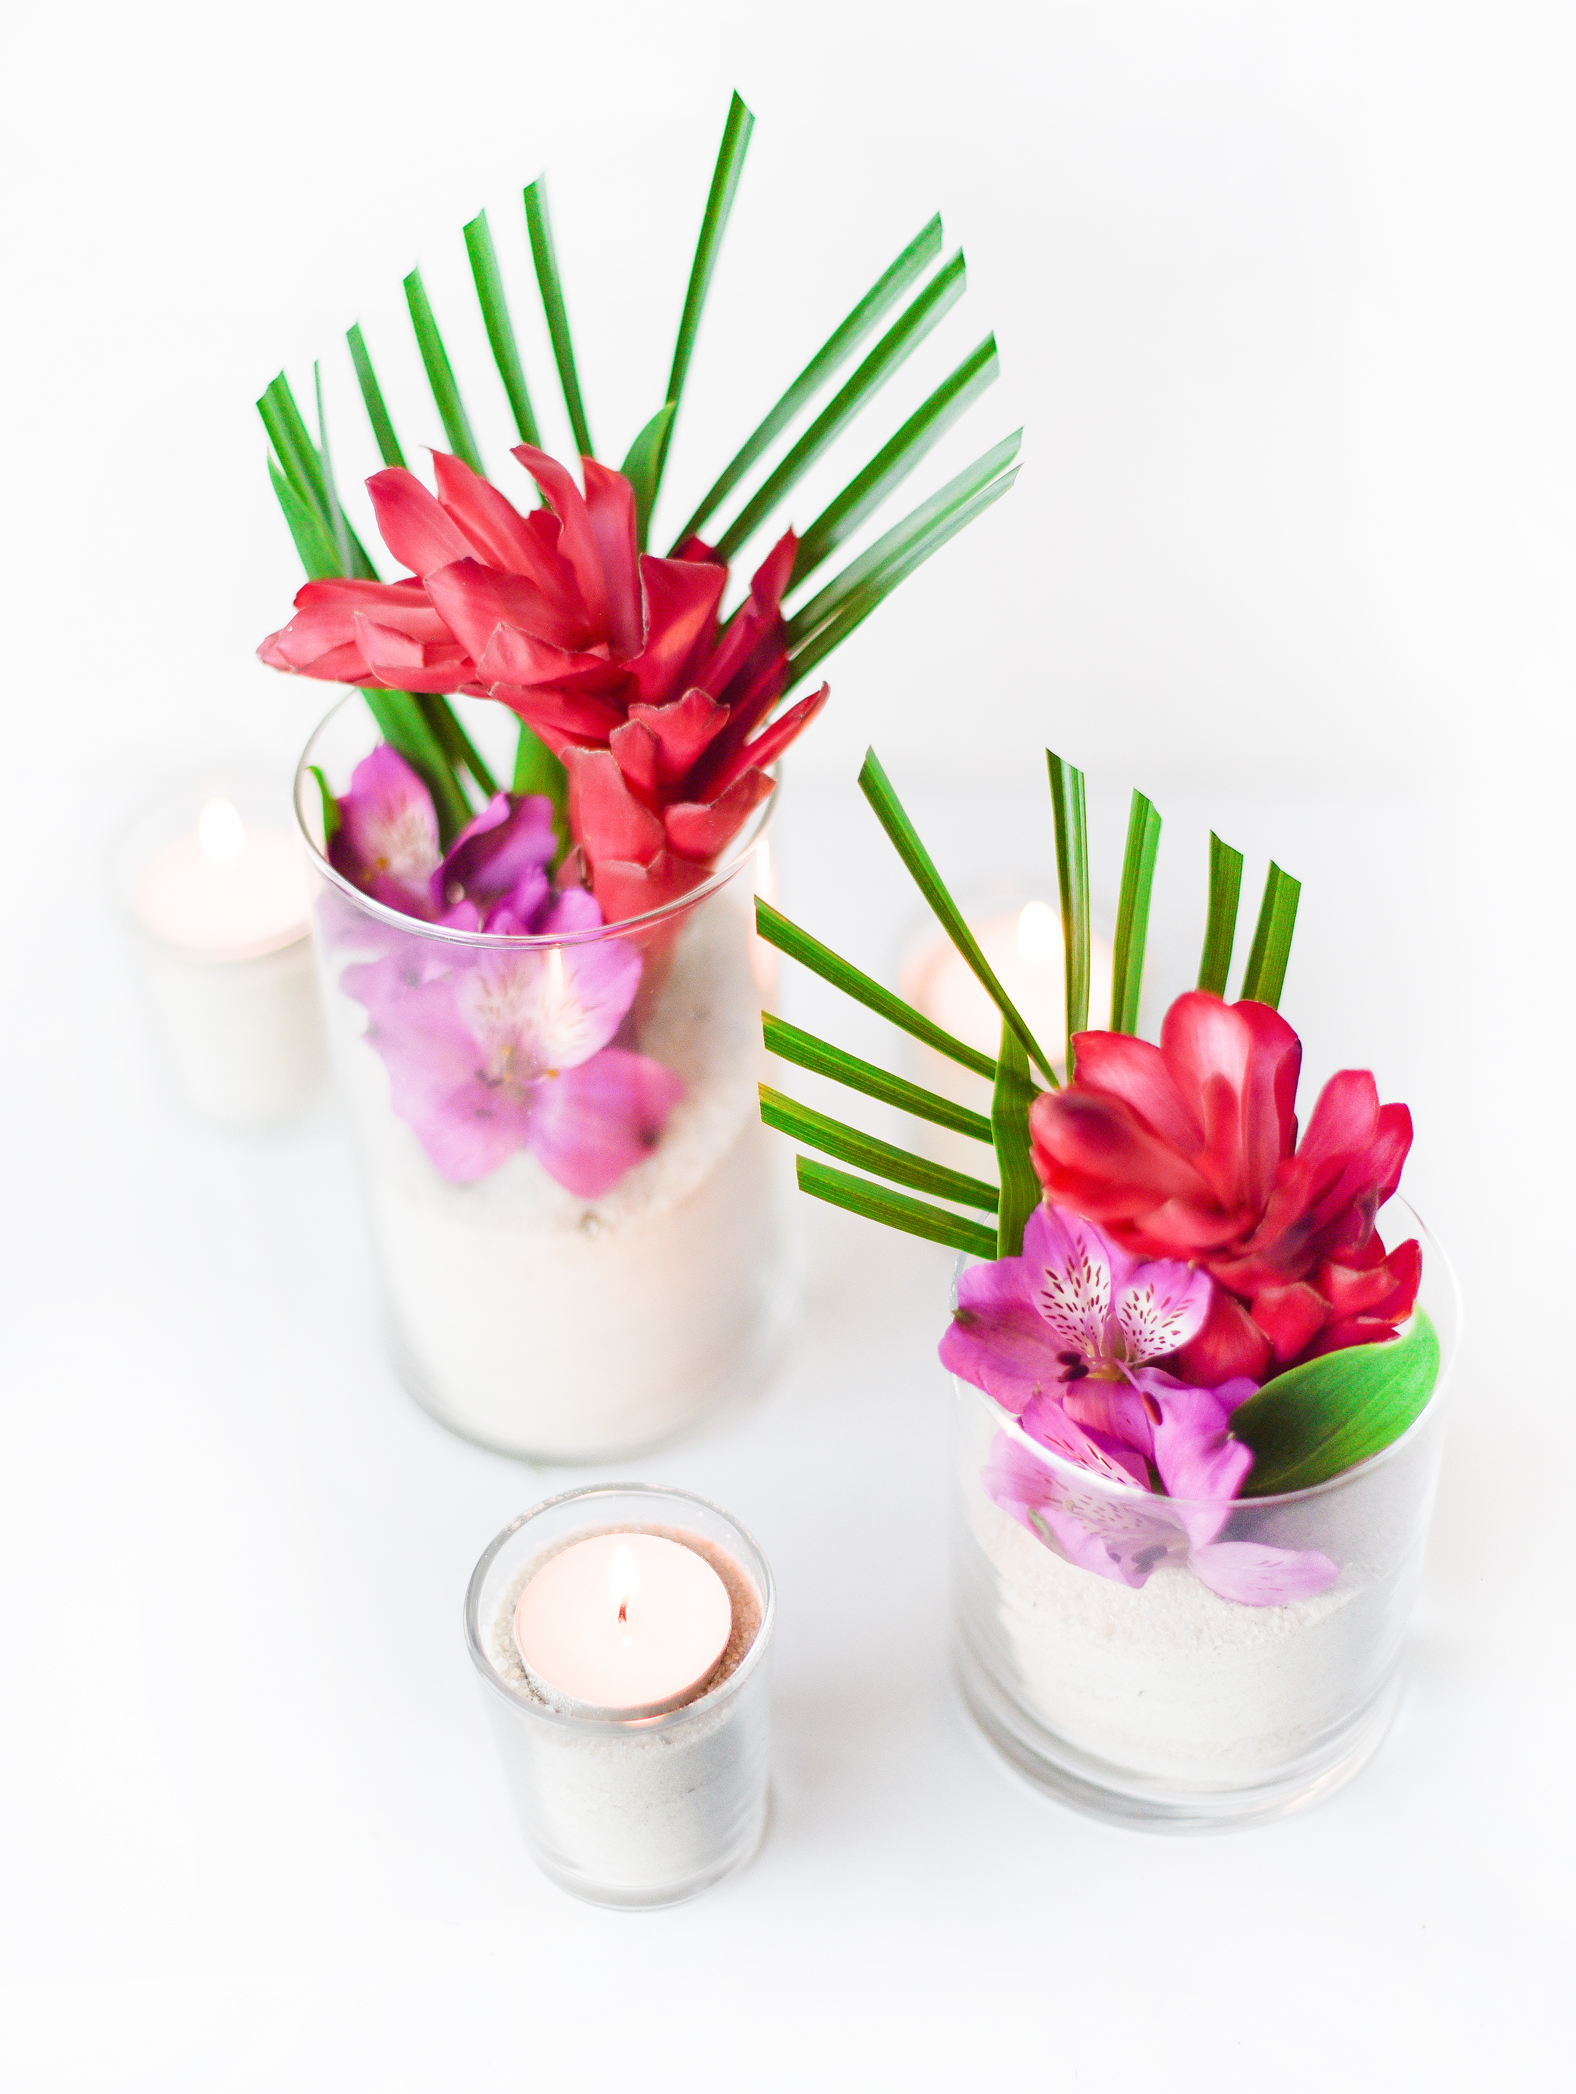 DIY Tropical Flower Centerpieces - Beacon Lane